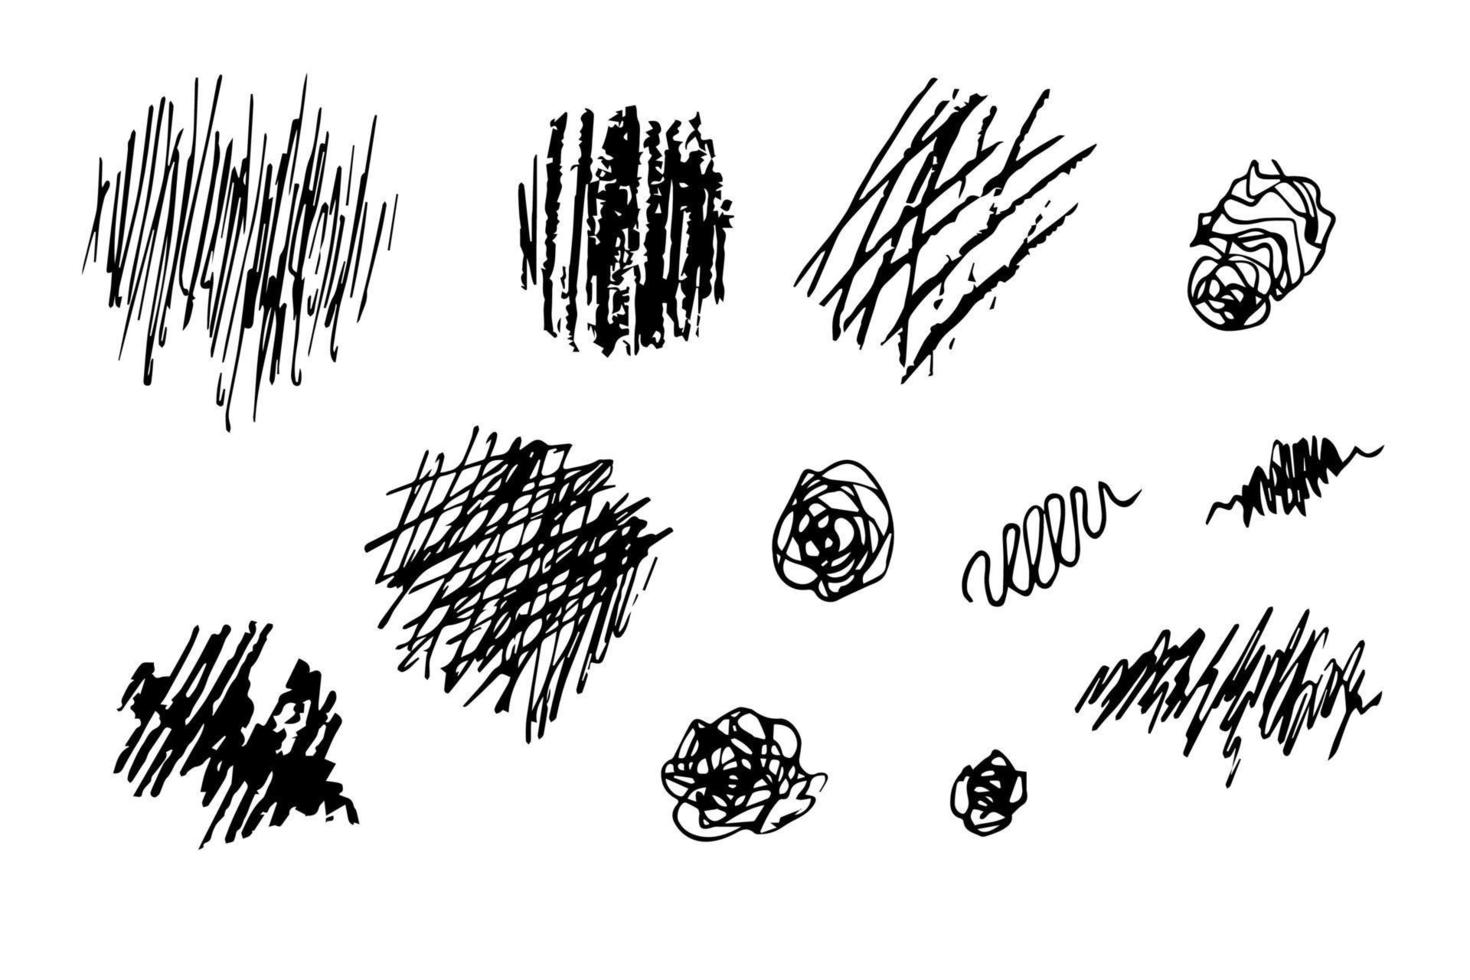 set vettoriale disegnato a mano. tratti, scarabocchi, macchie di varia forma, inchiostro, carboncino. aggrovigliato, contornato di nero.